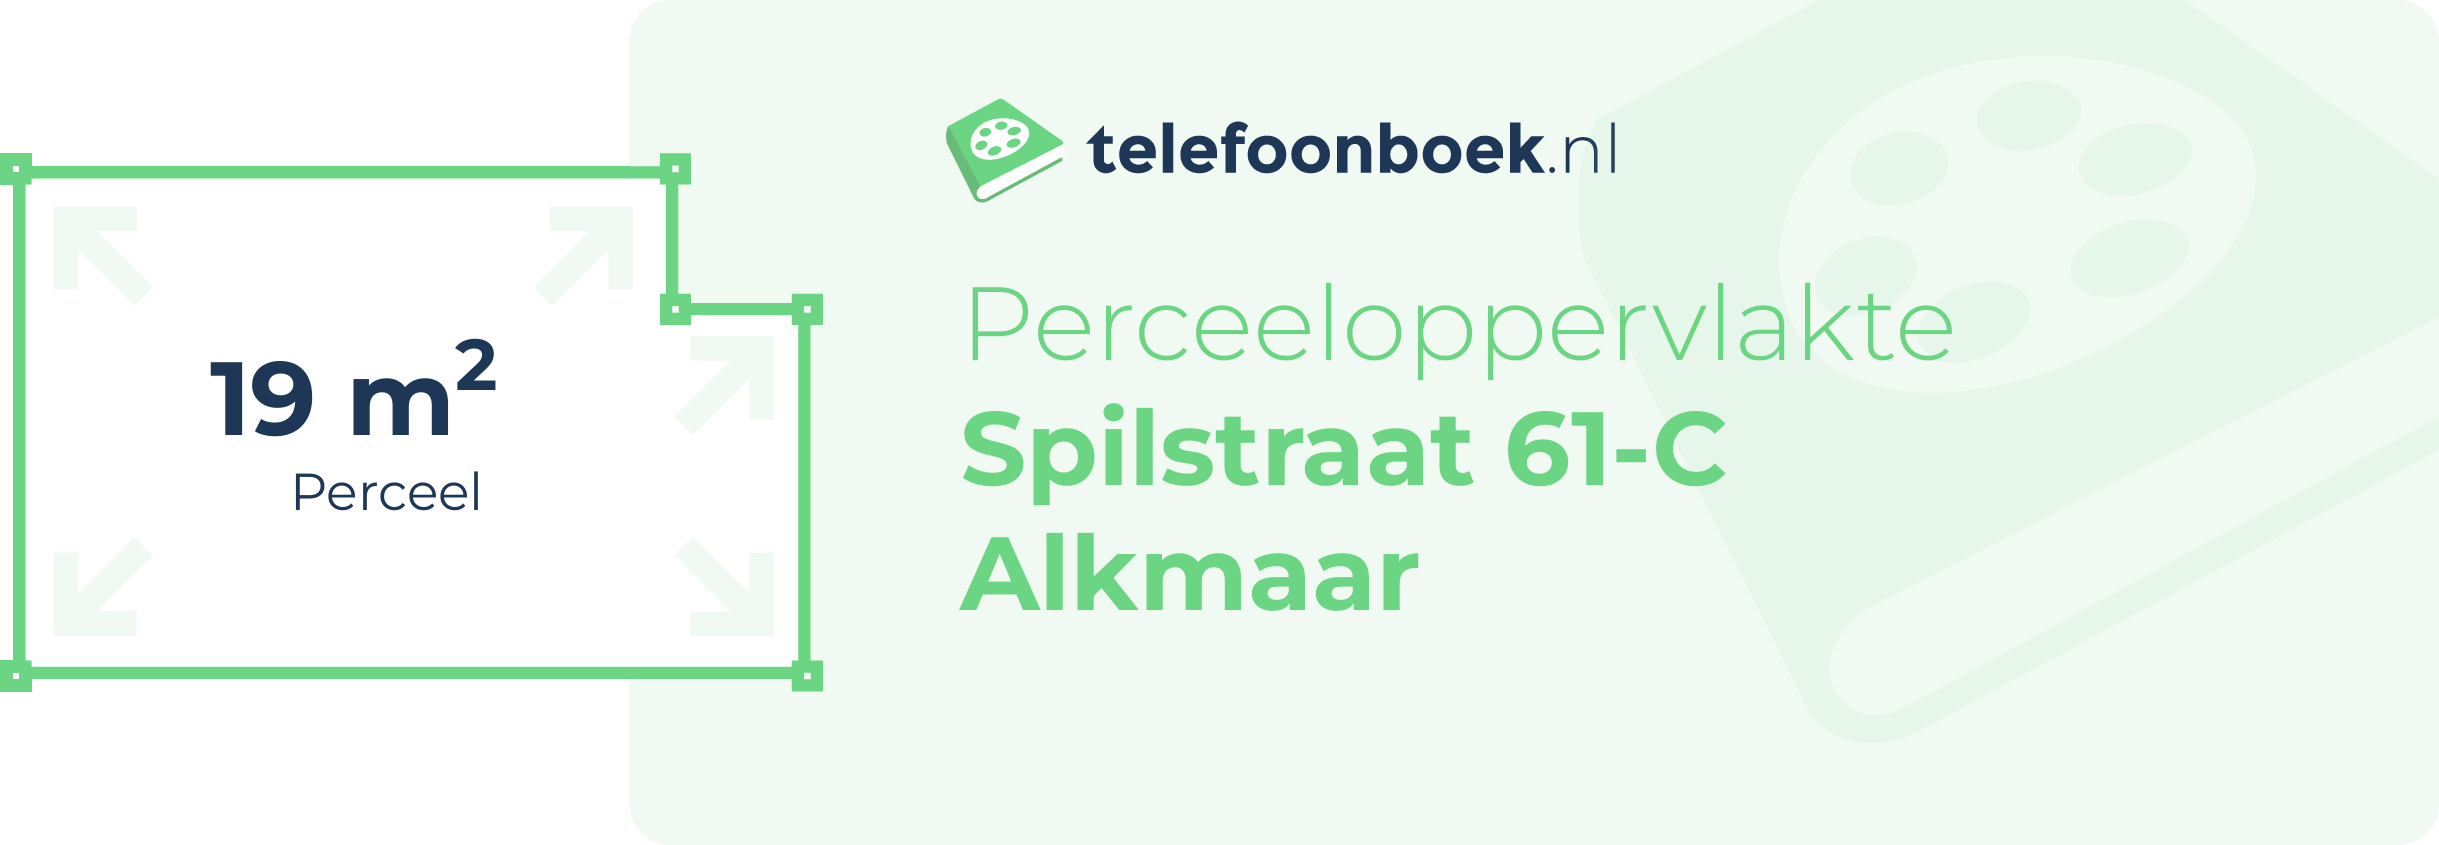 Perceeloppervlakte Spilstraat 61-C Alkmaar